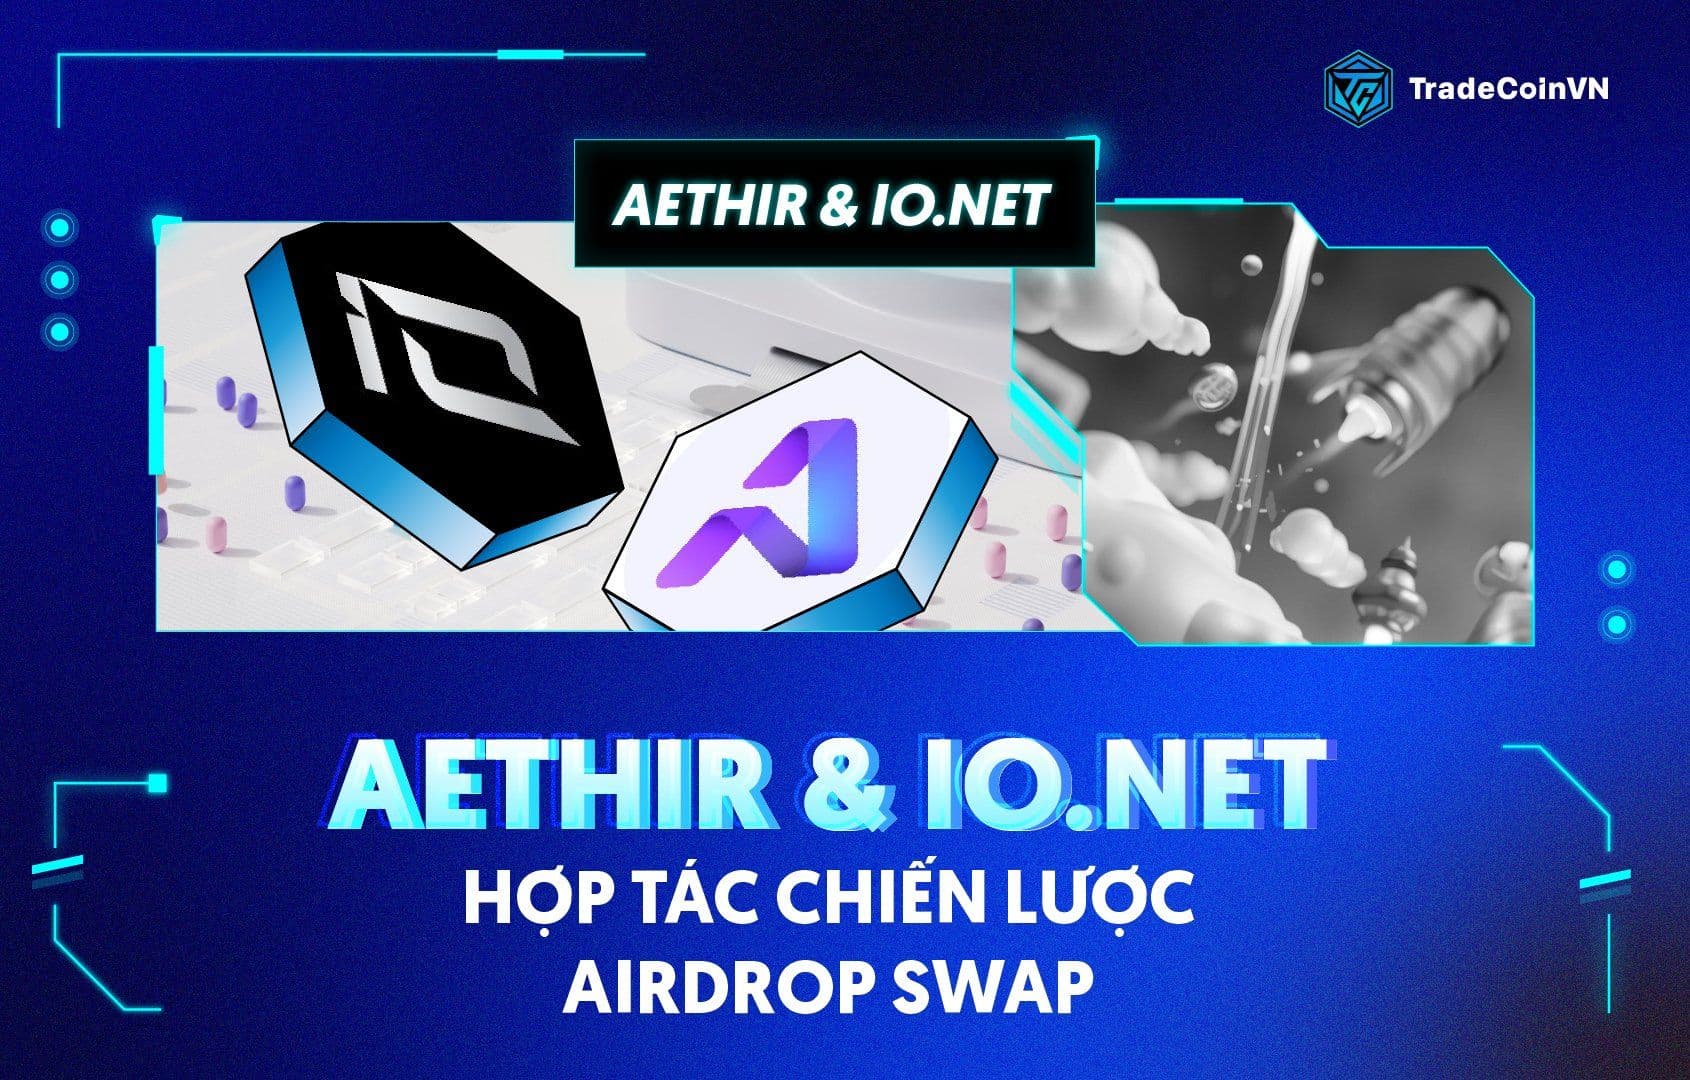 Aethir & io.net hợp tác chiến lược, cùng tổ chức Airdrop Swap thúc đẩy điện toán phi tập trung và cơ sở hạ tầng GPU